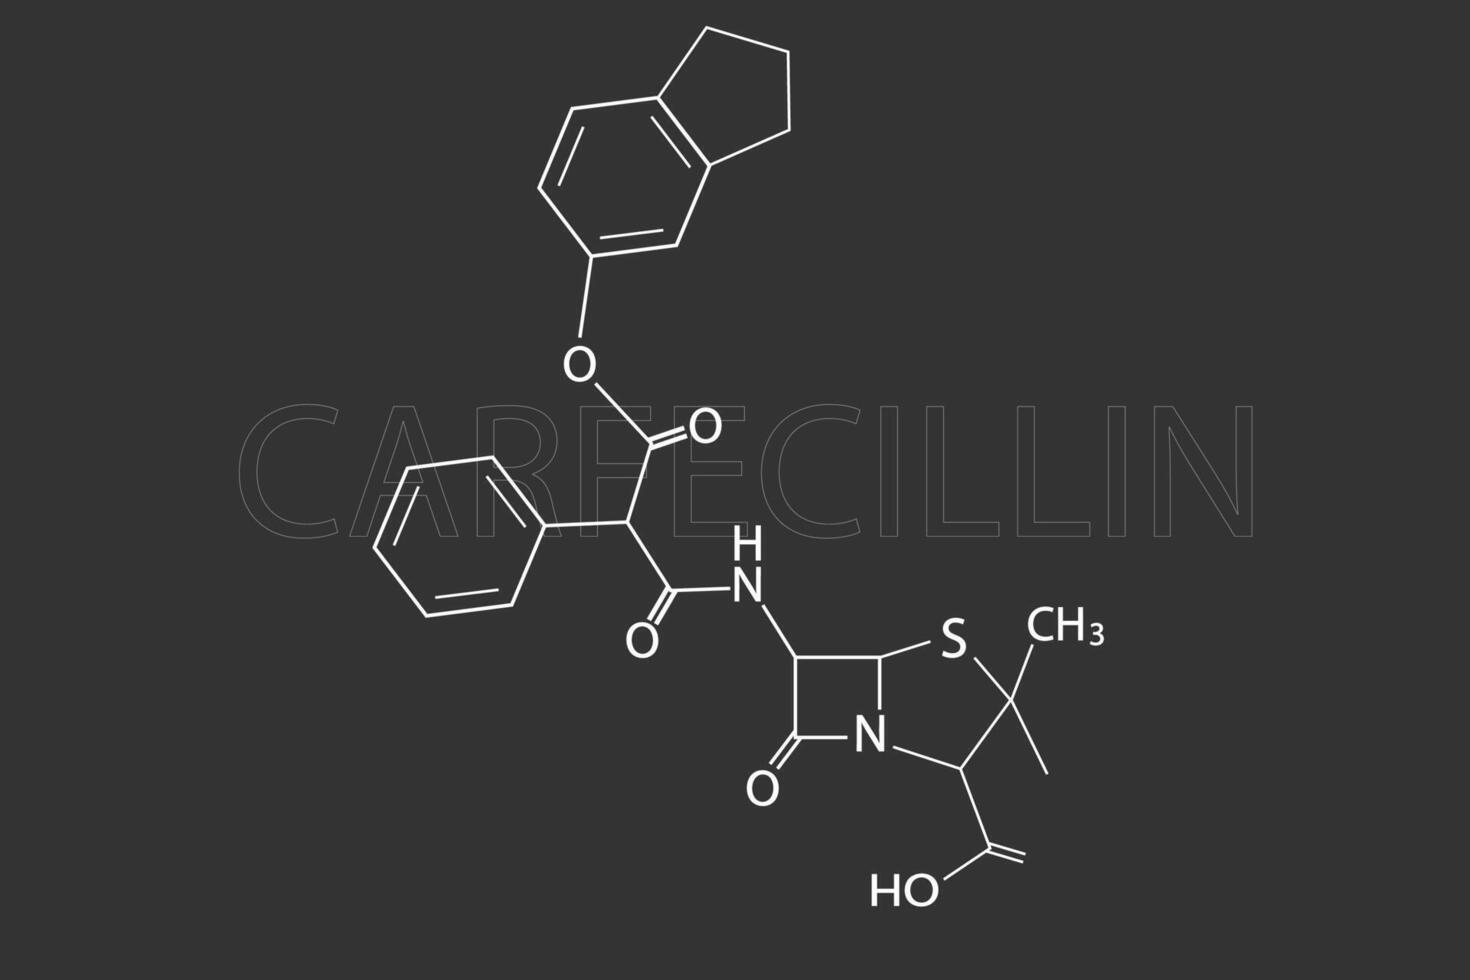 Carfecillin molekular Skelett- chemisch Formel vektor